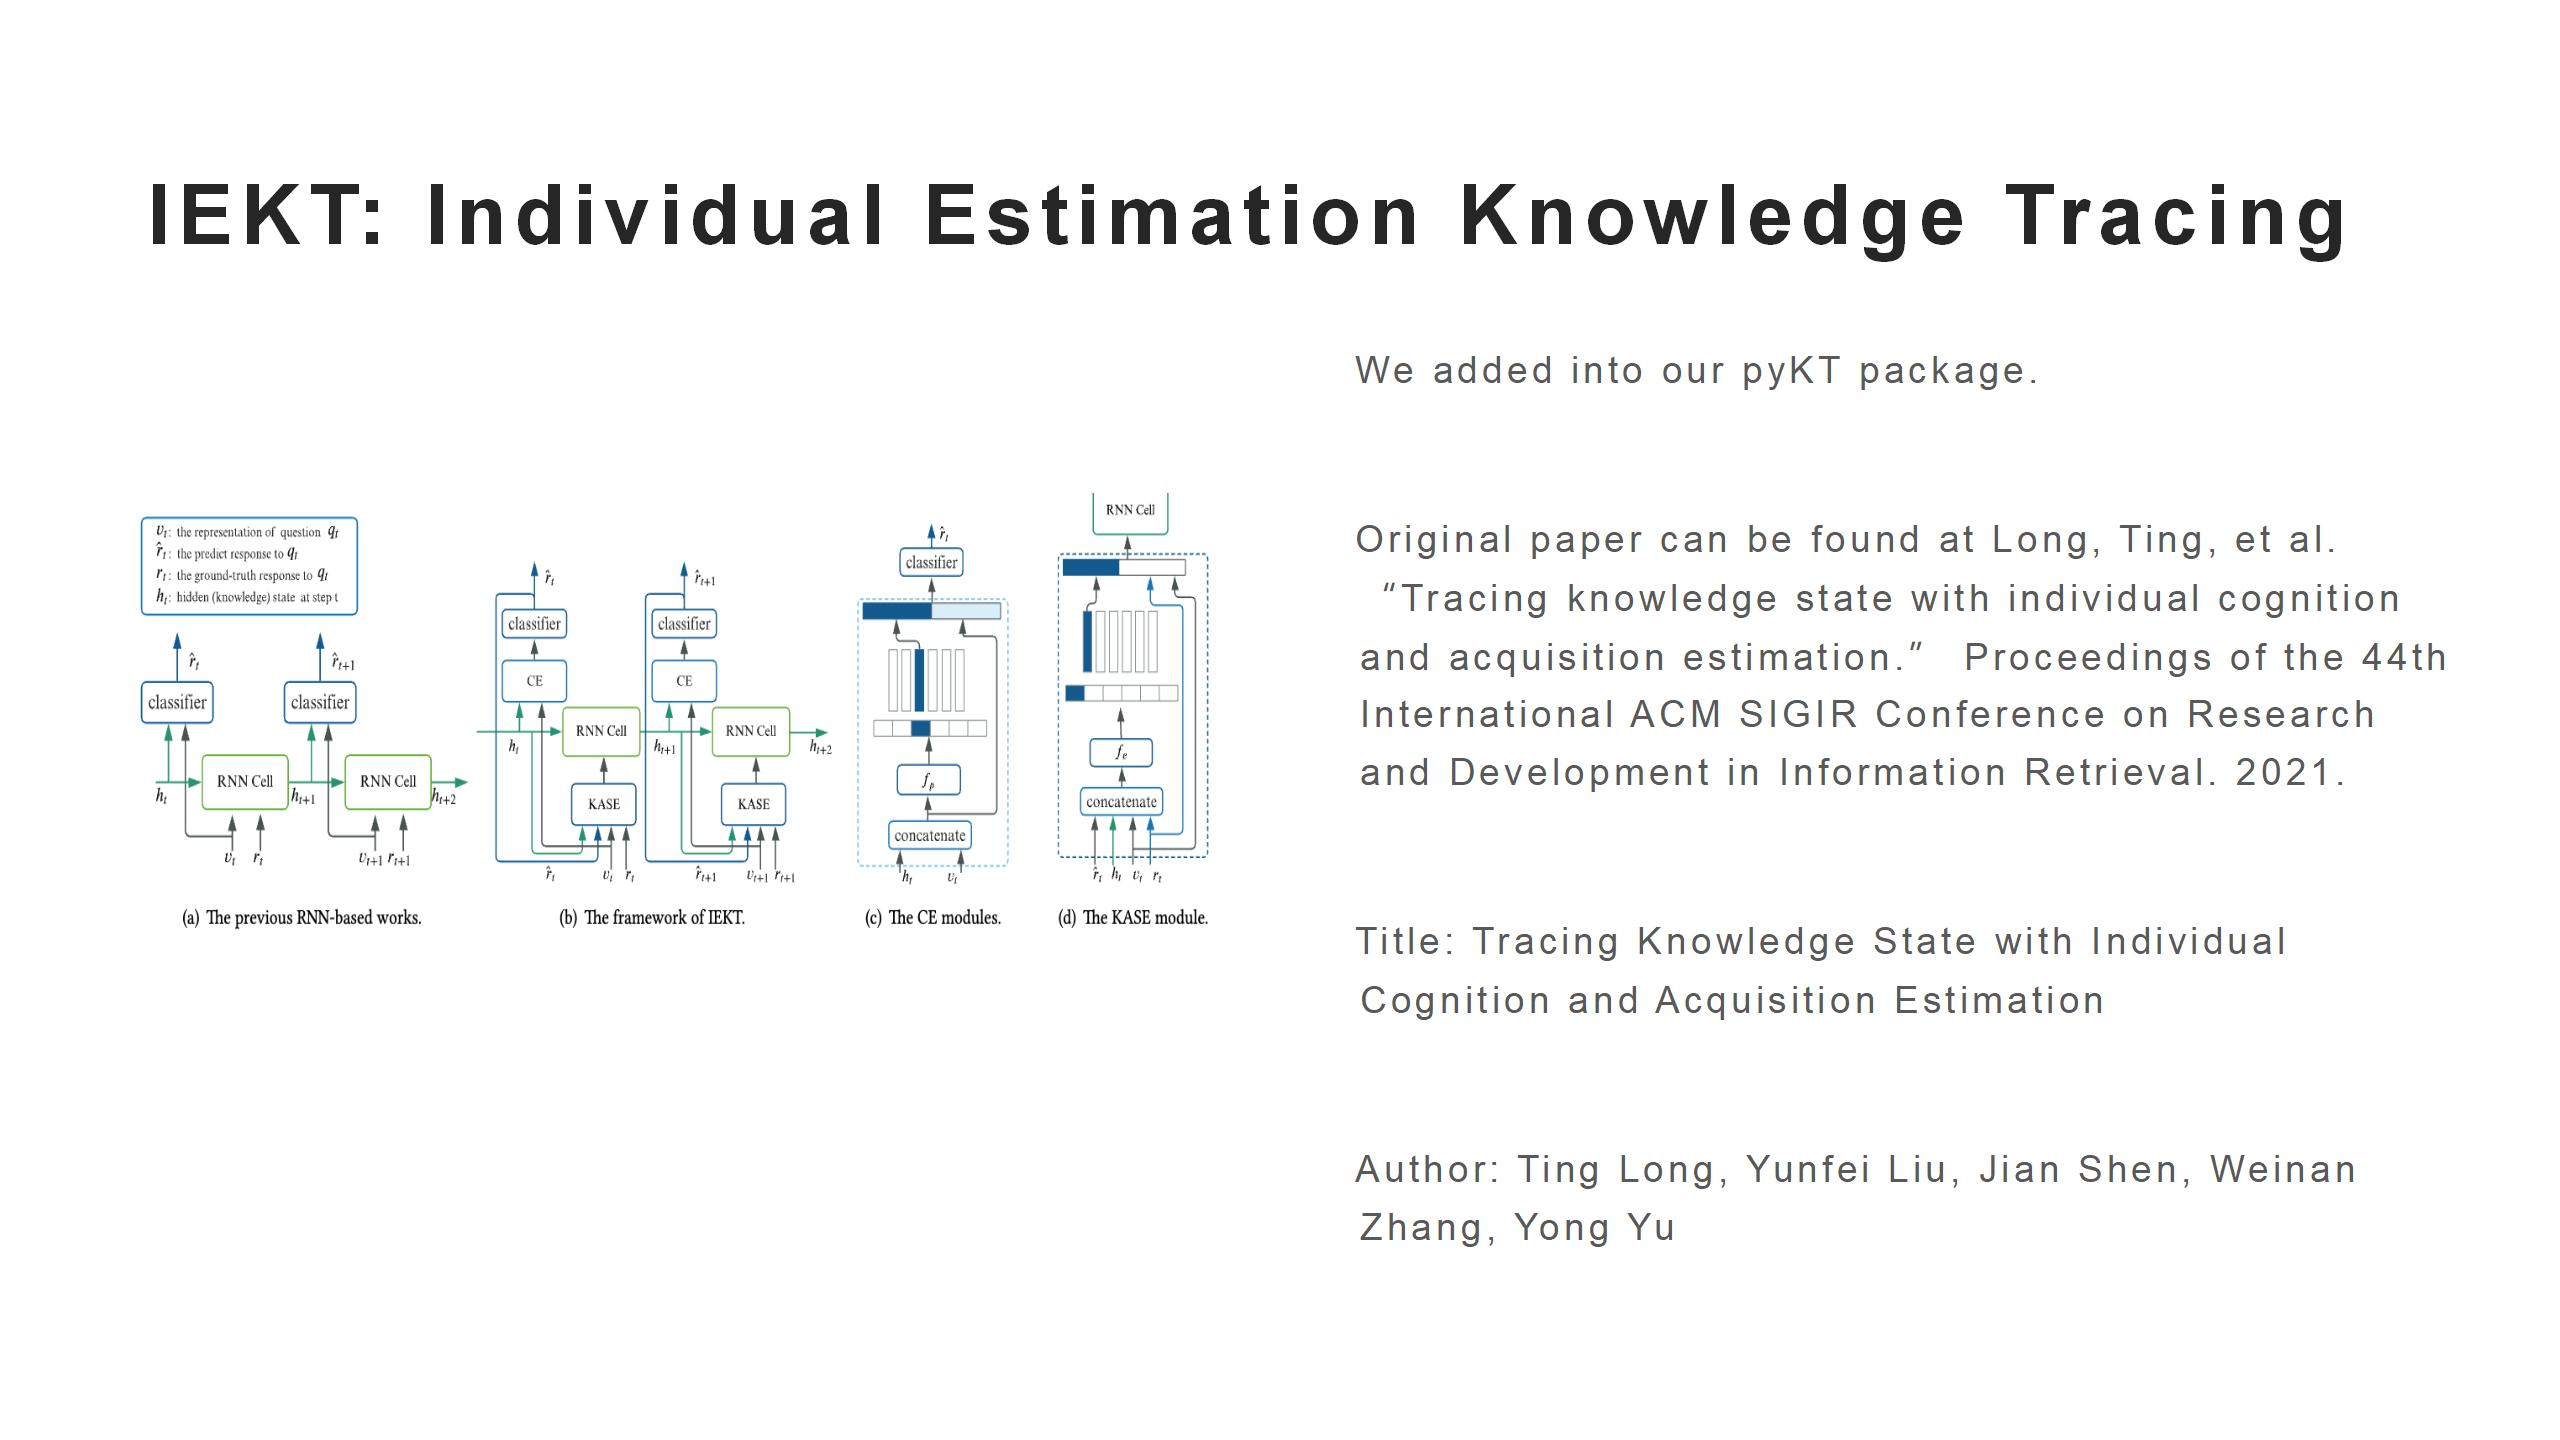 IEKT: Individual Estimation Knowledge Tracing